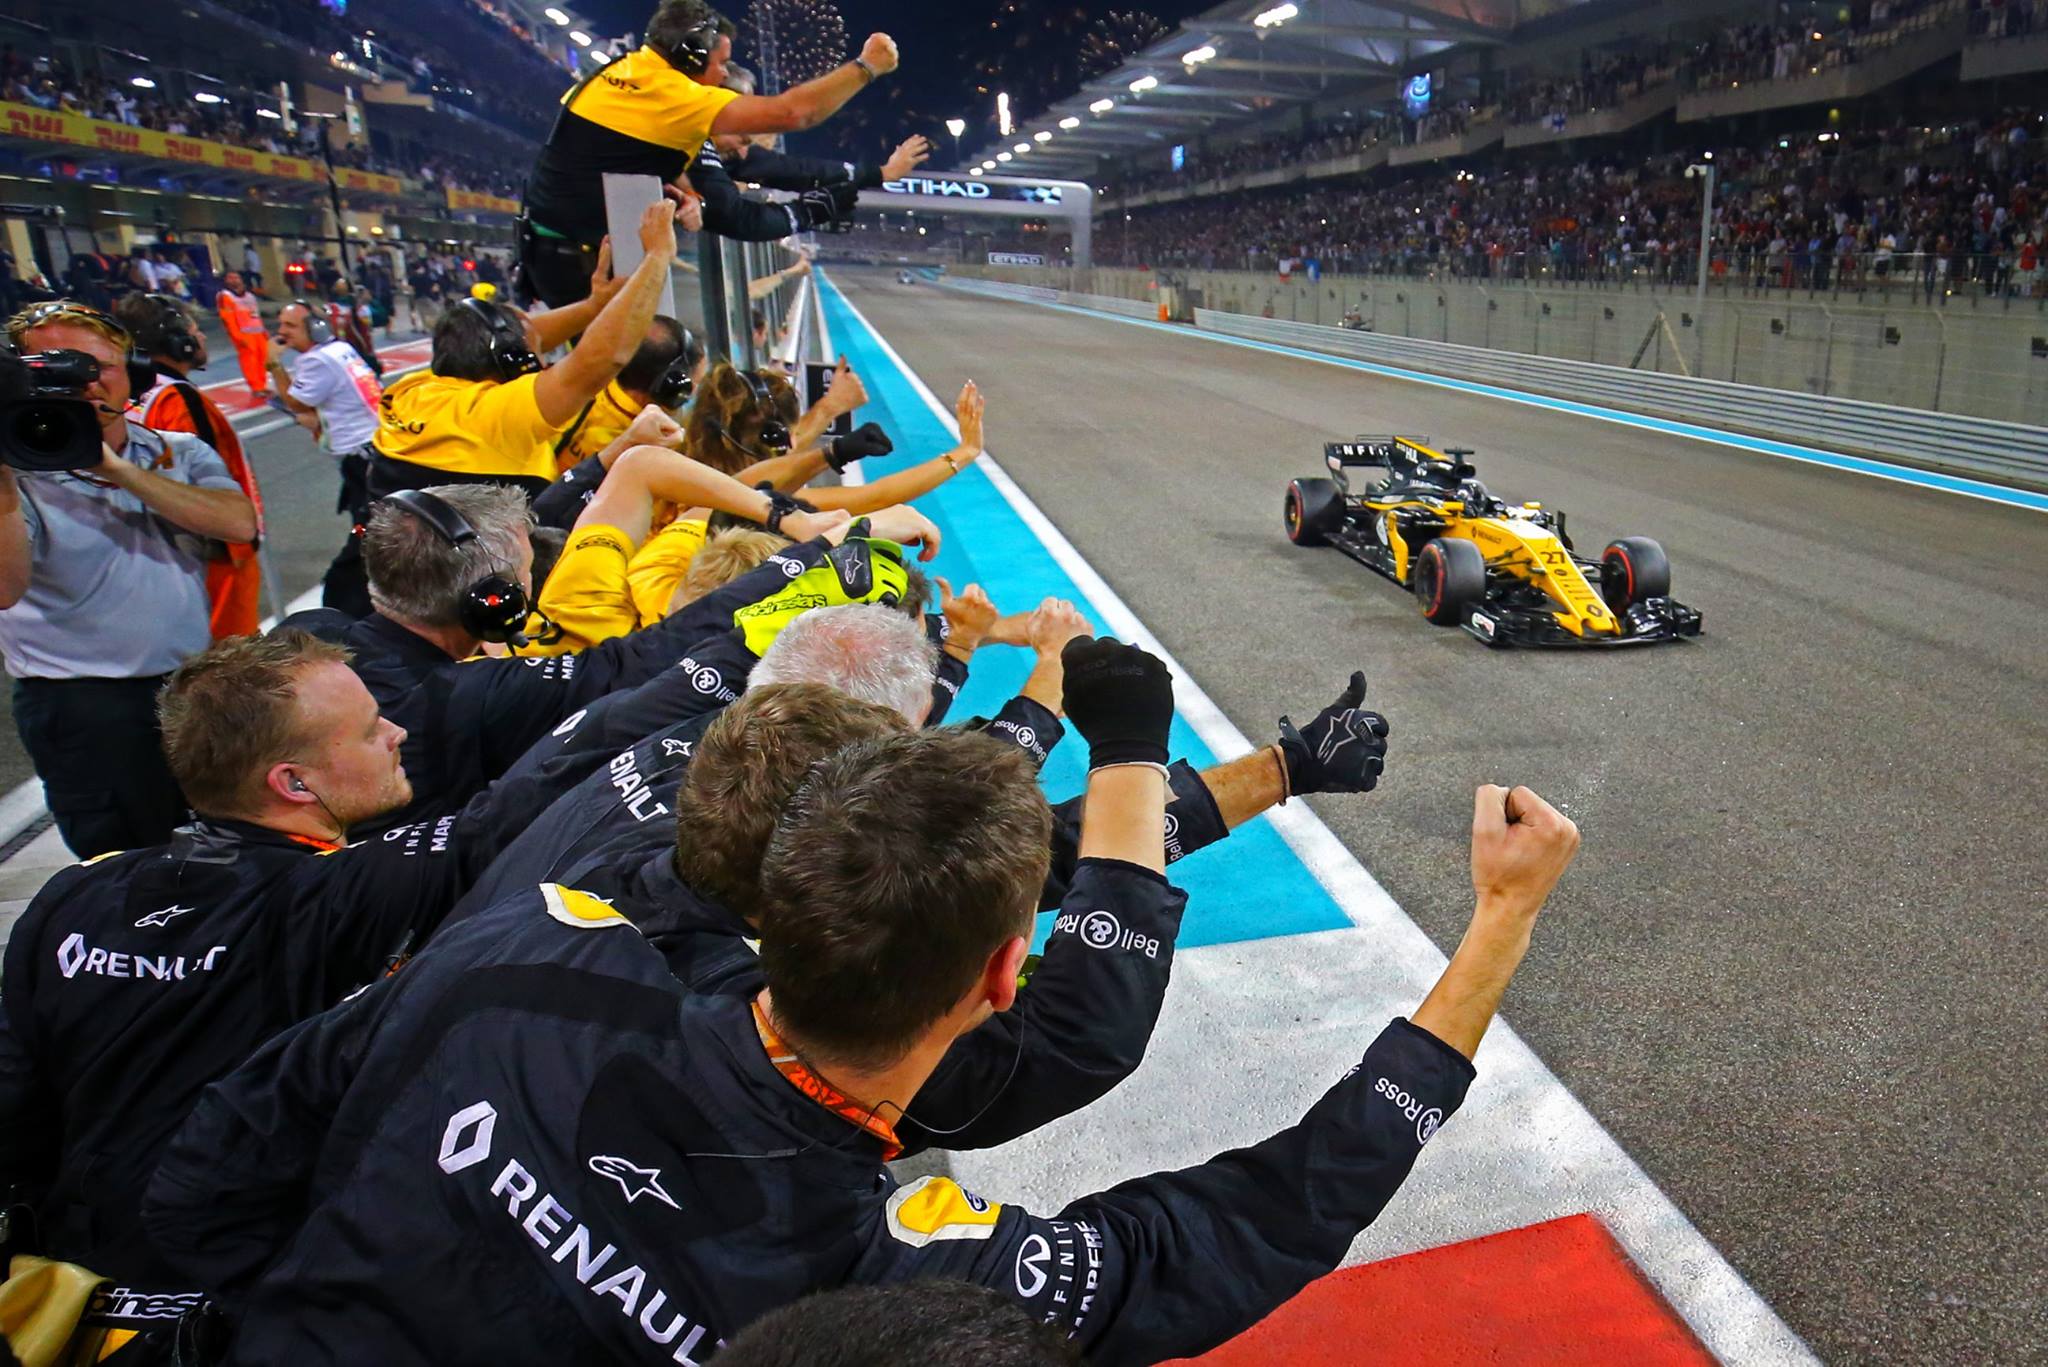 Nejen Renault, ale i ostatní týmy budou zřejmě proti